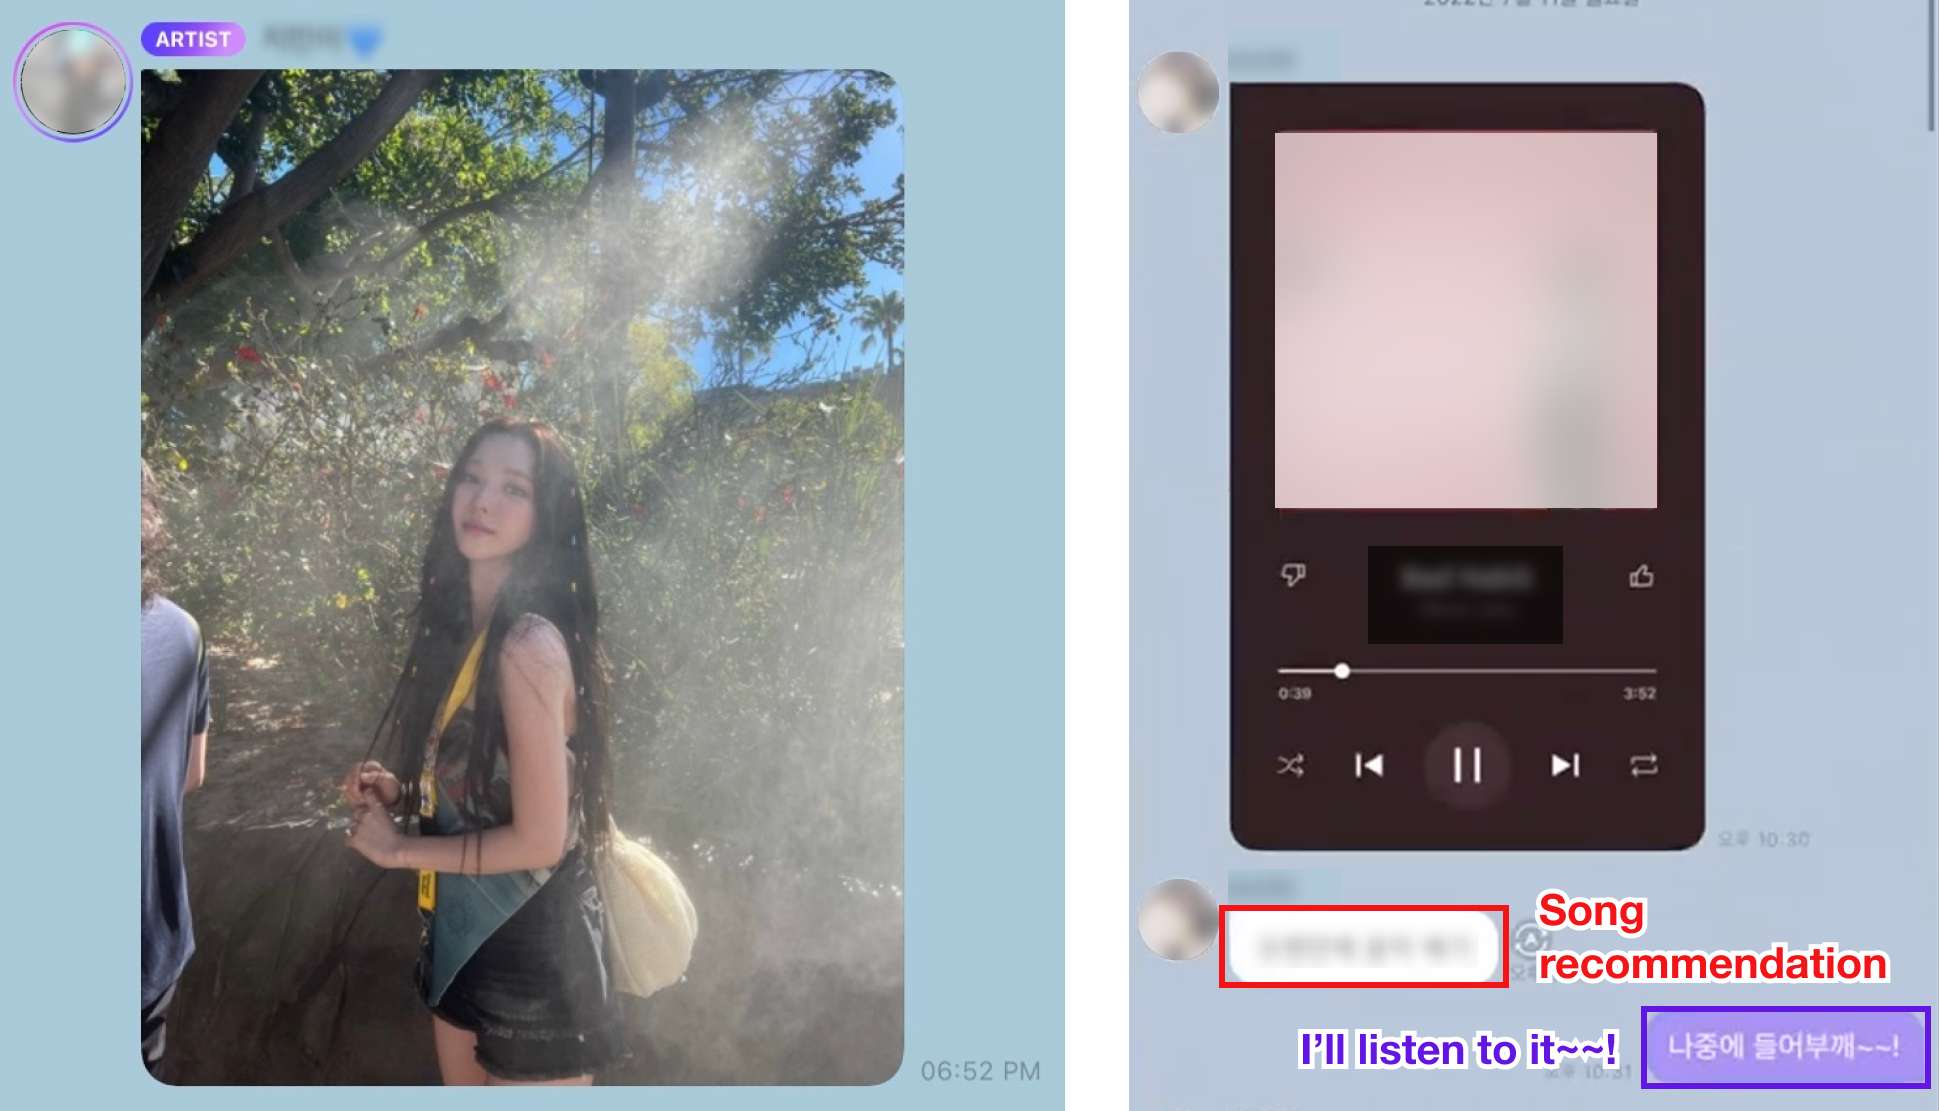 Bubble应用：(左图) 一张由偶像发给粉丝的照片（有些信息应用严格禁止将偶像的图片和信息在应用之外与没有付费的粉丝分享。这位偶像特别指出，这张图片可以在应用程序之外分享）。(右图）一位偶像给一位粉丝发送了一首推荐歌曲。